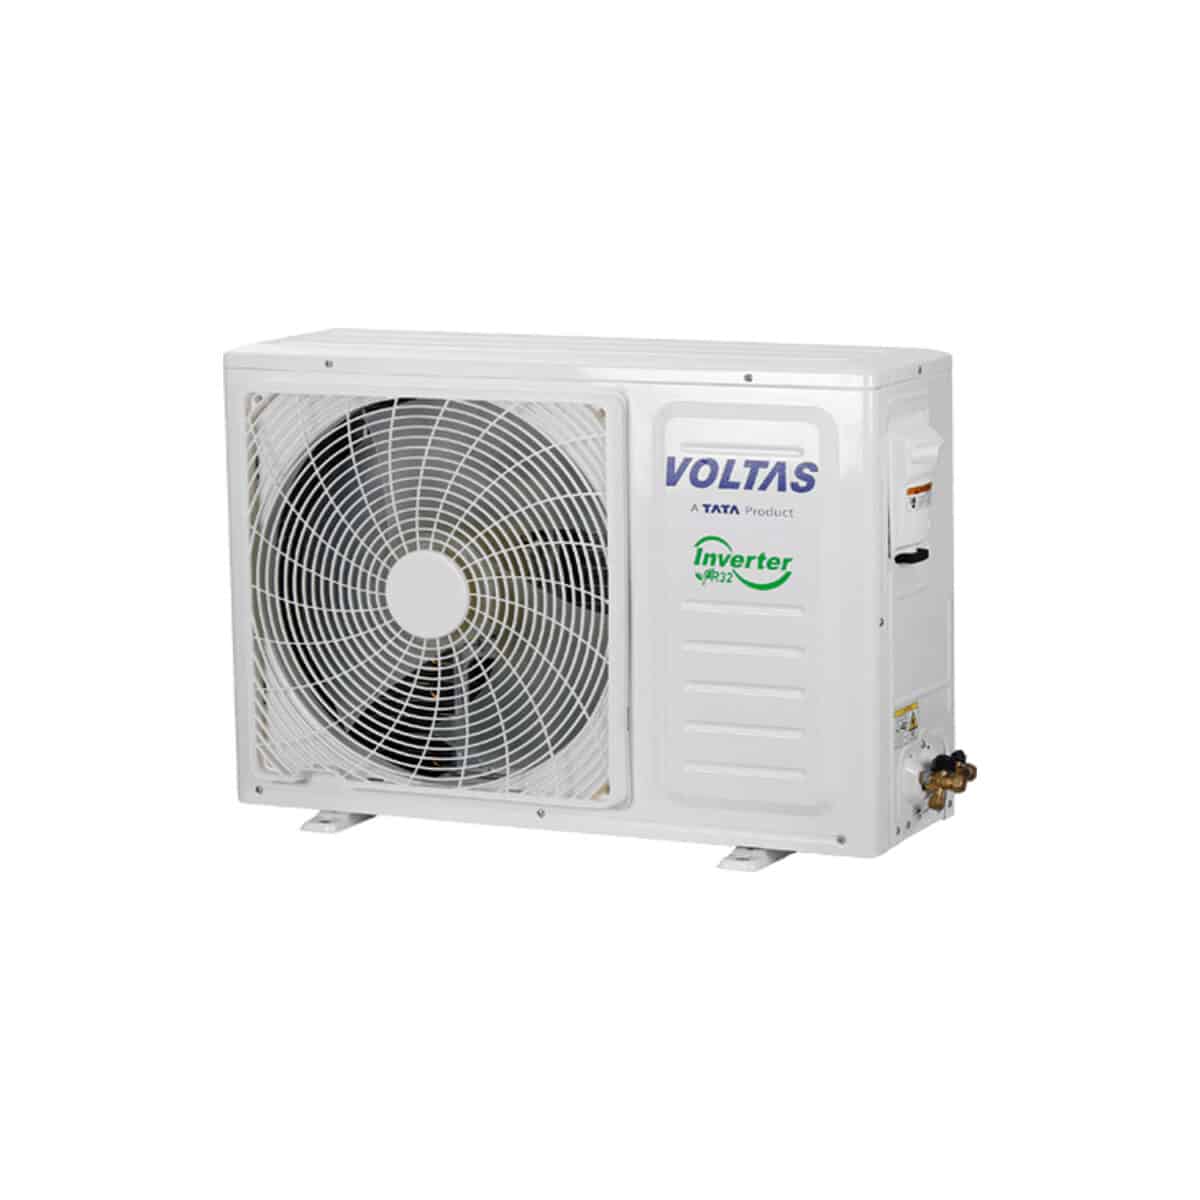 Voltas 1.5HP 5stars Split Air Conditioner 1